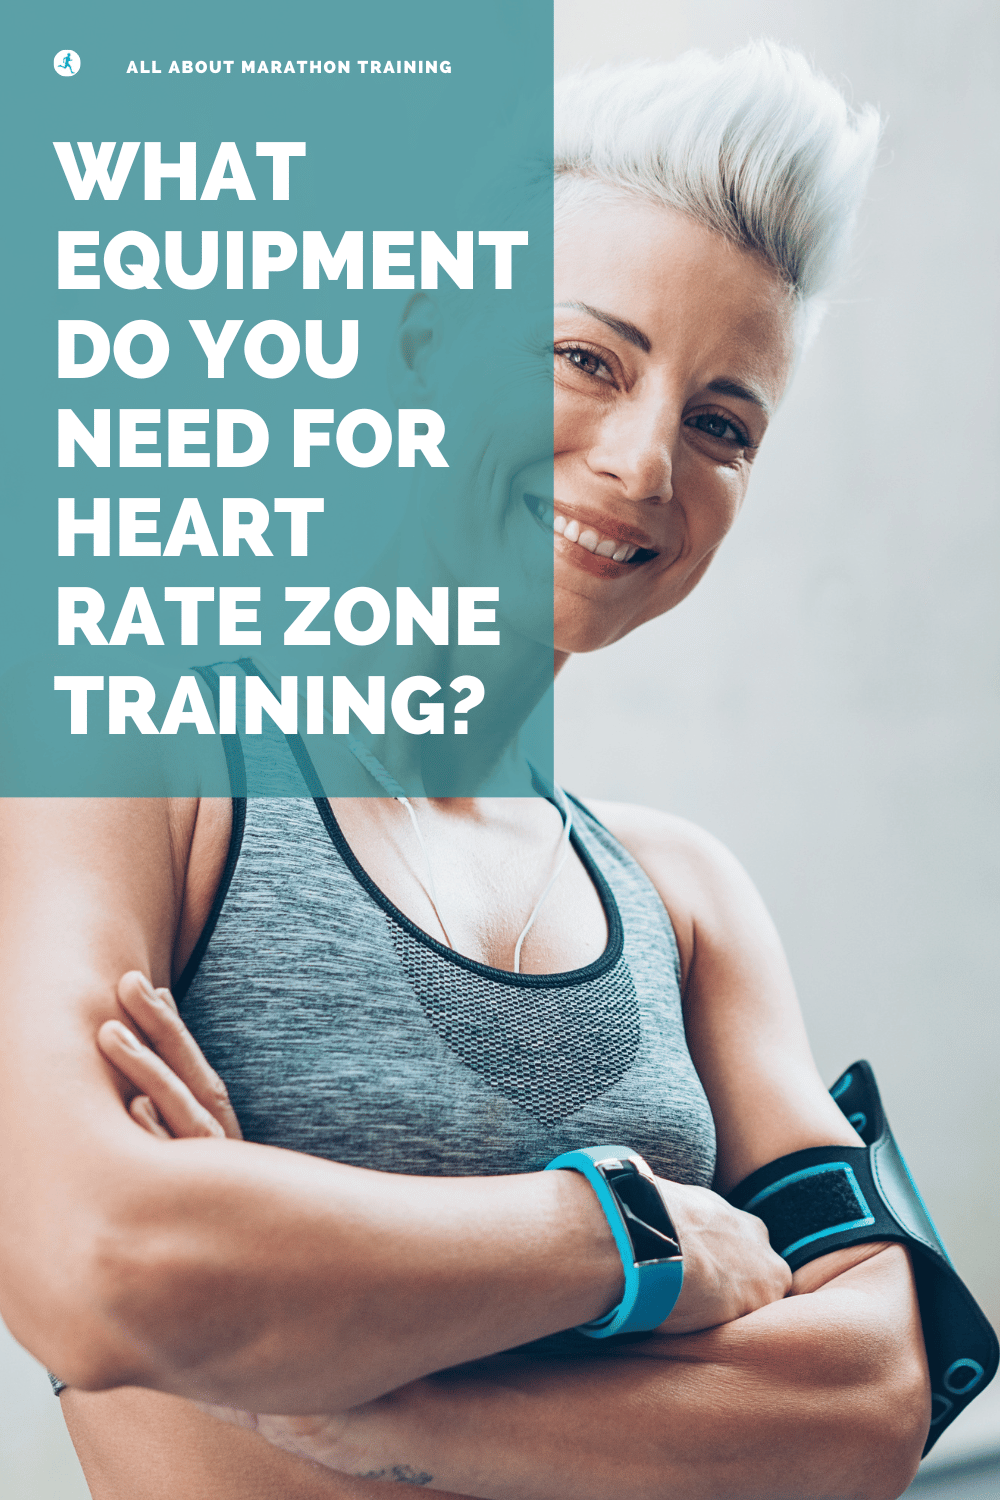 Marathon Training Heart Rate Zone Equipment